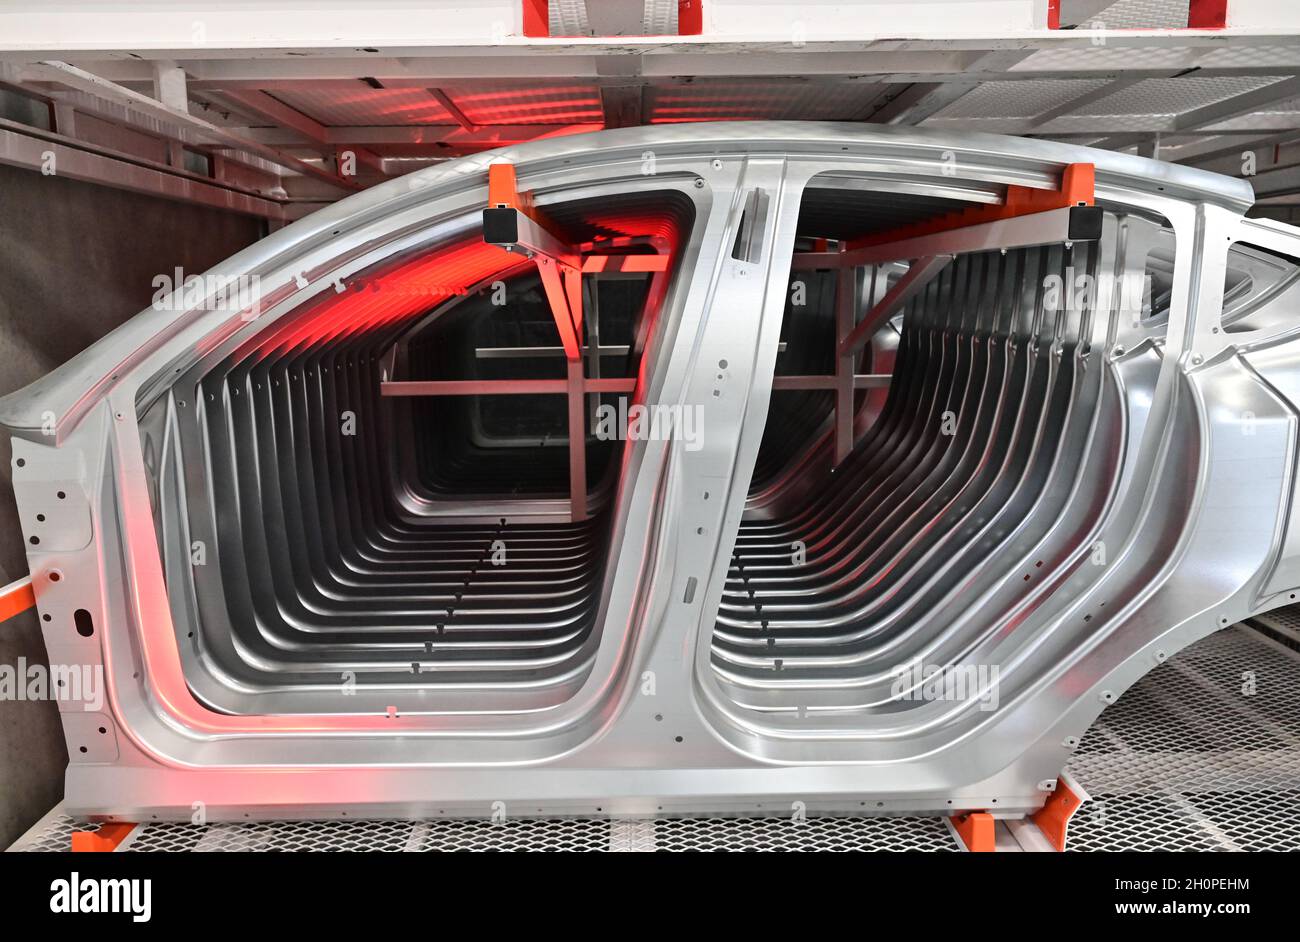 09 octobre 2021, Brandebourg, Grünheide: Des parties de véhicule de la caisse pour la production d'un modèle y de Tesla sont vues à la journée ouverte dans une salle de production du Gigalactory de Tesla.À Grünheide, à l'est de Berlin, les premiers véhicules seront en sortie de la chaîne de production à partir de la fin de 2021.La société américaine prévoit de construire environ 500,000 modèles Ys ici chaque année.Photo: Patrick Pleul/dpa-Zentralbild/ZB Banque D'Images